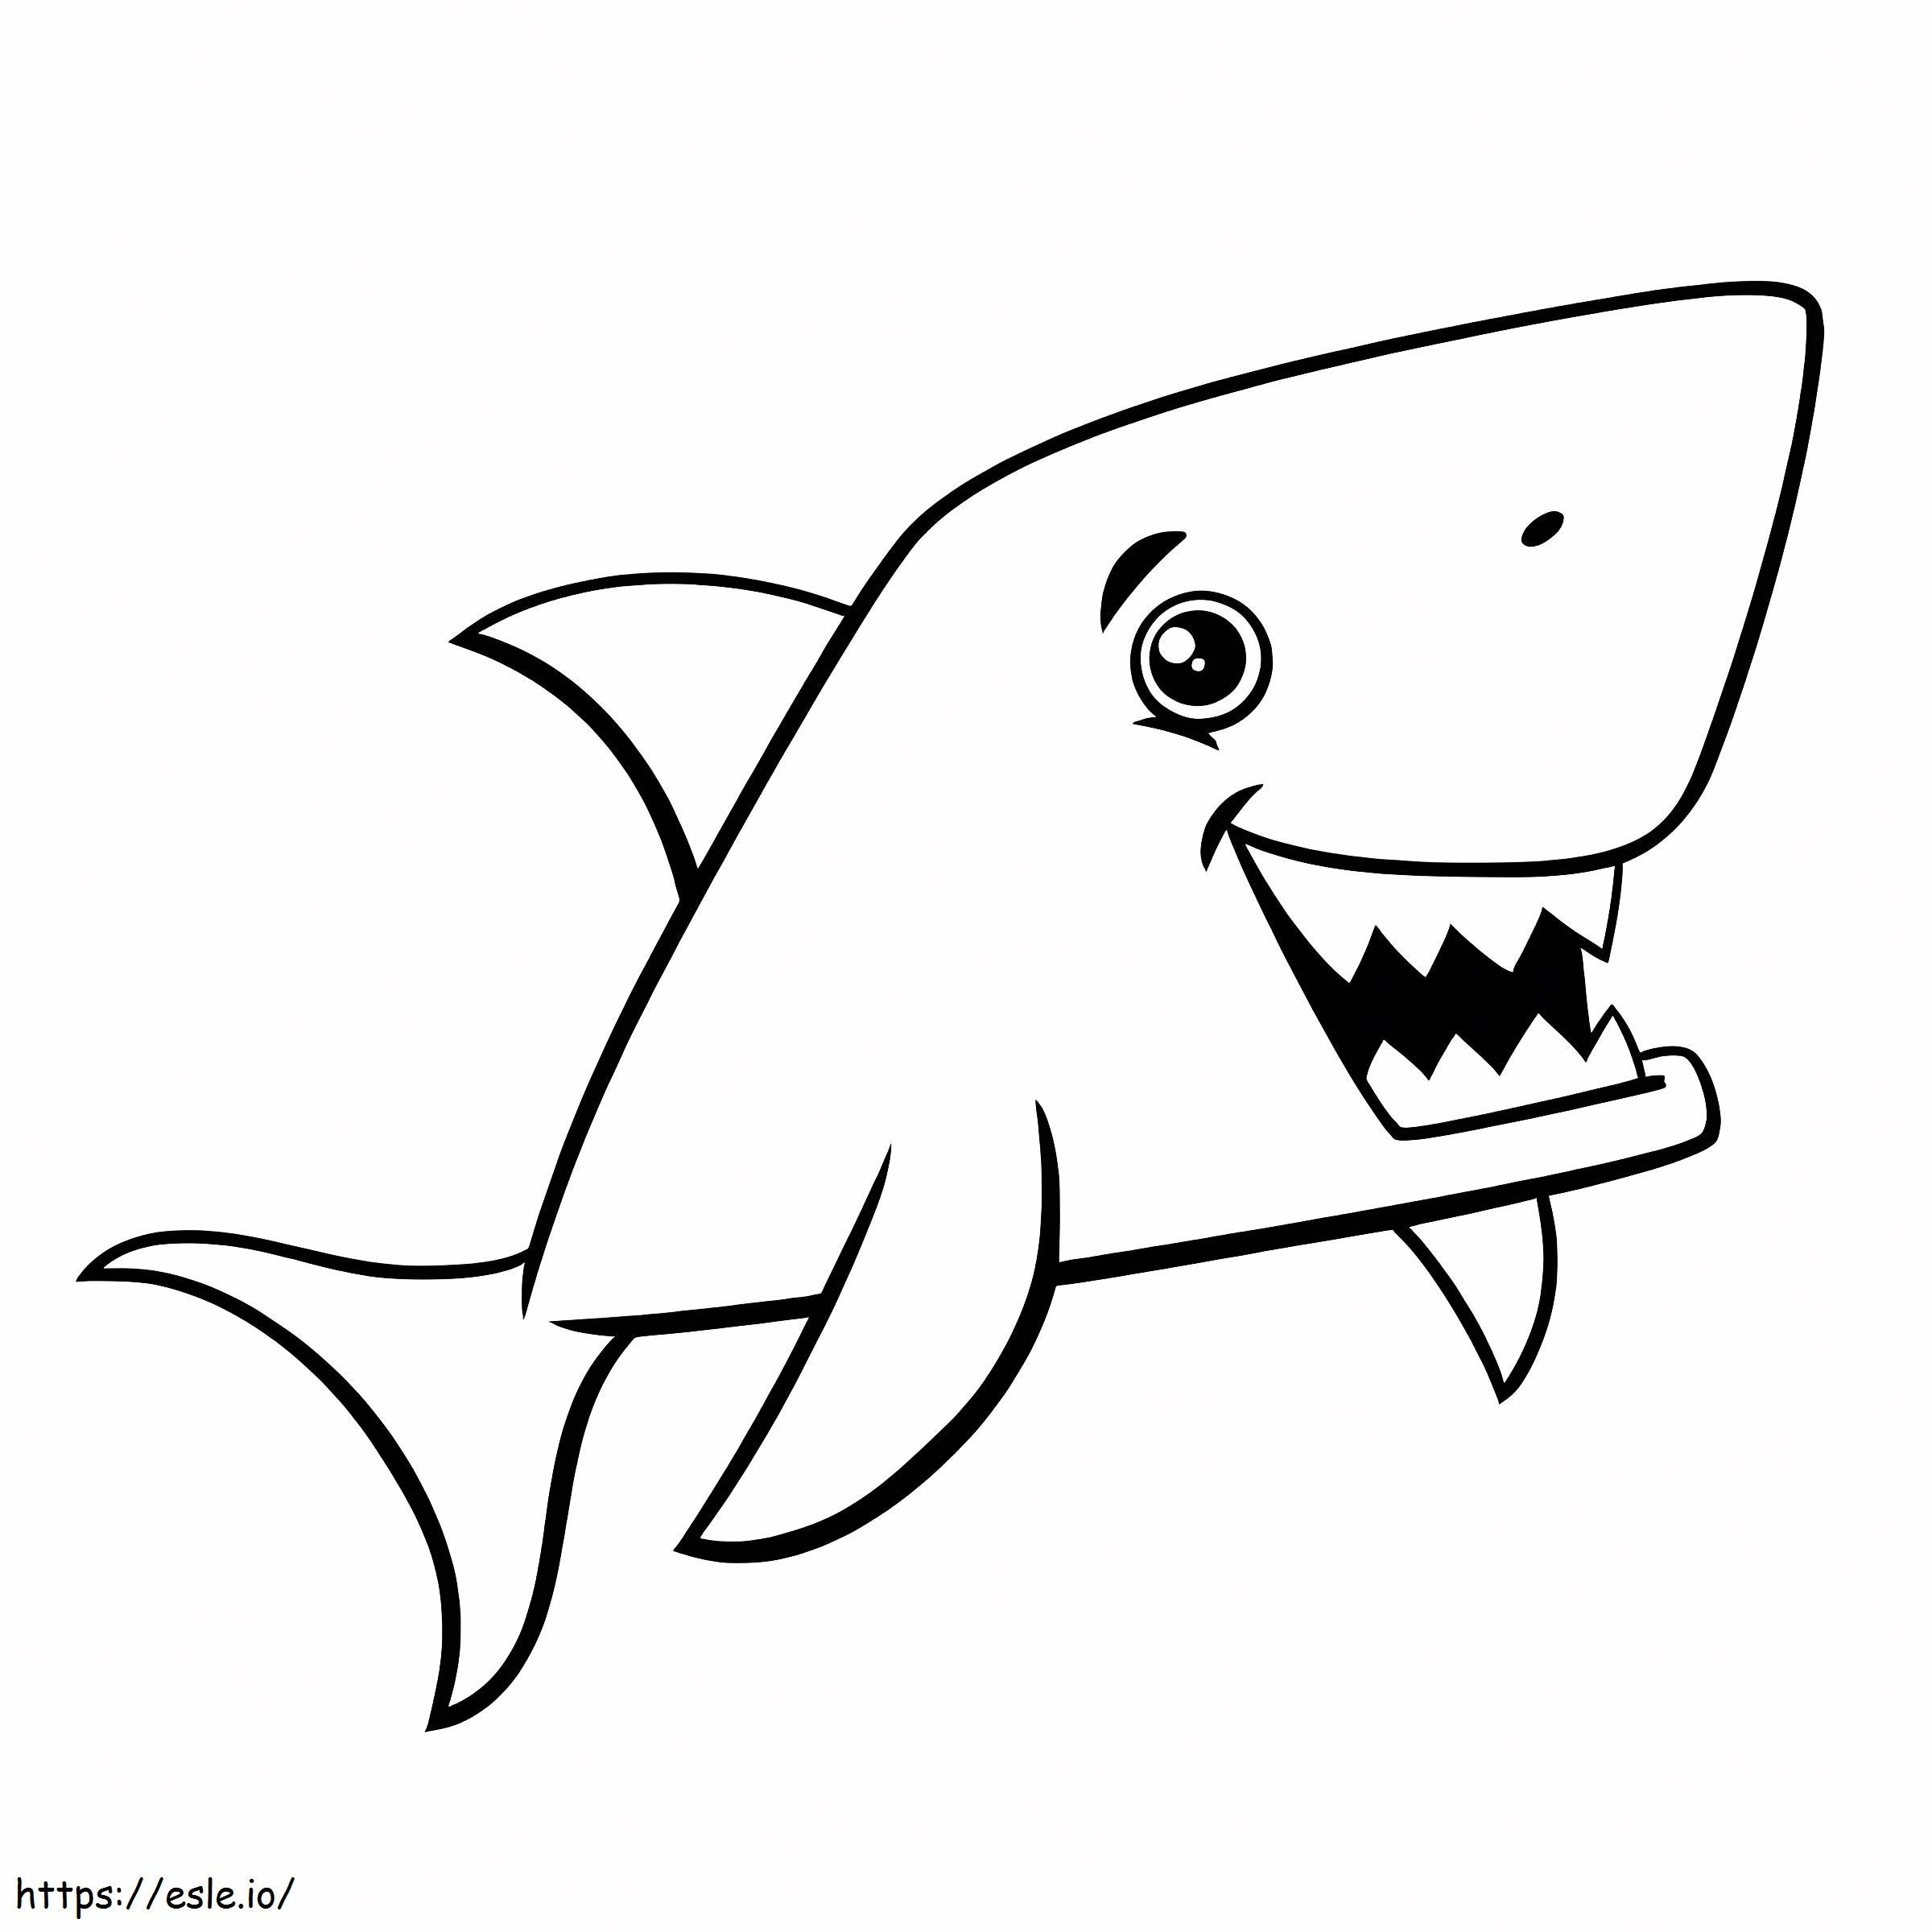 Tubarão de desenho animado para colorir